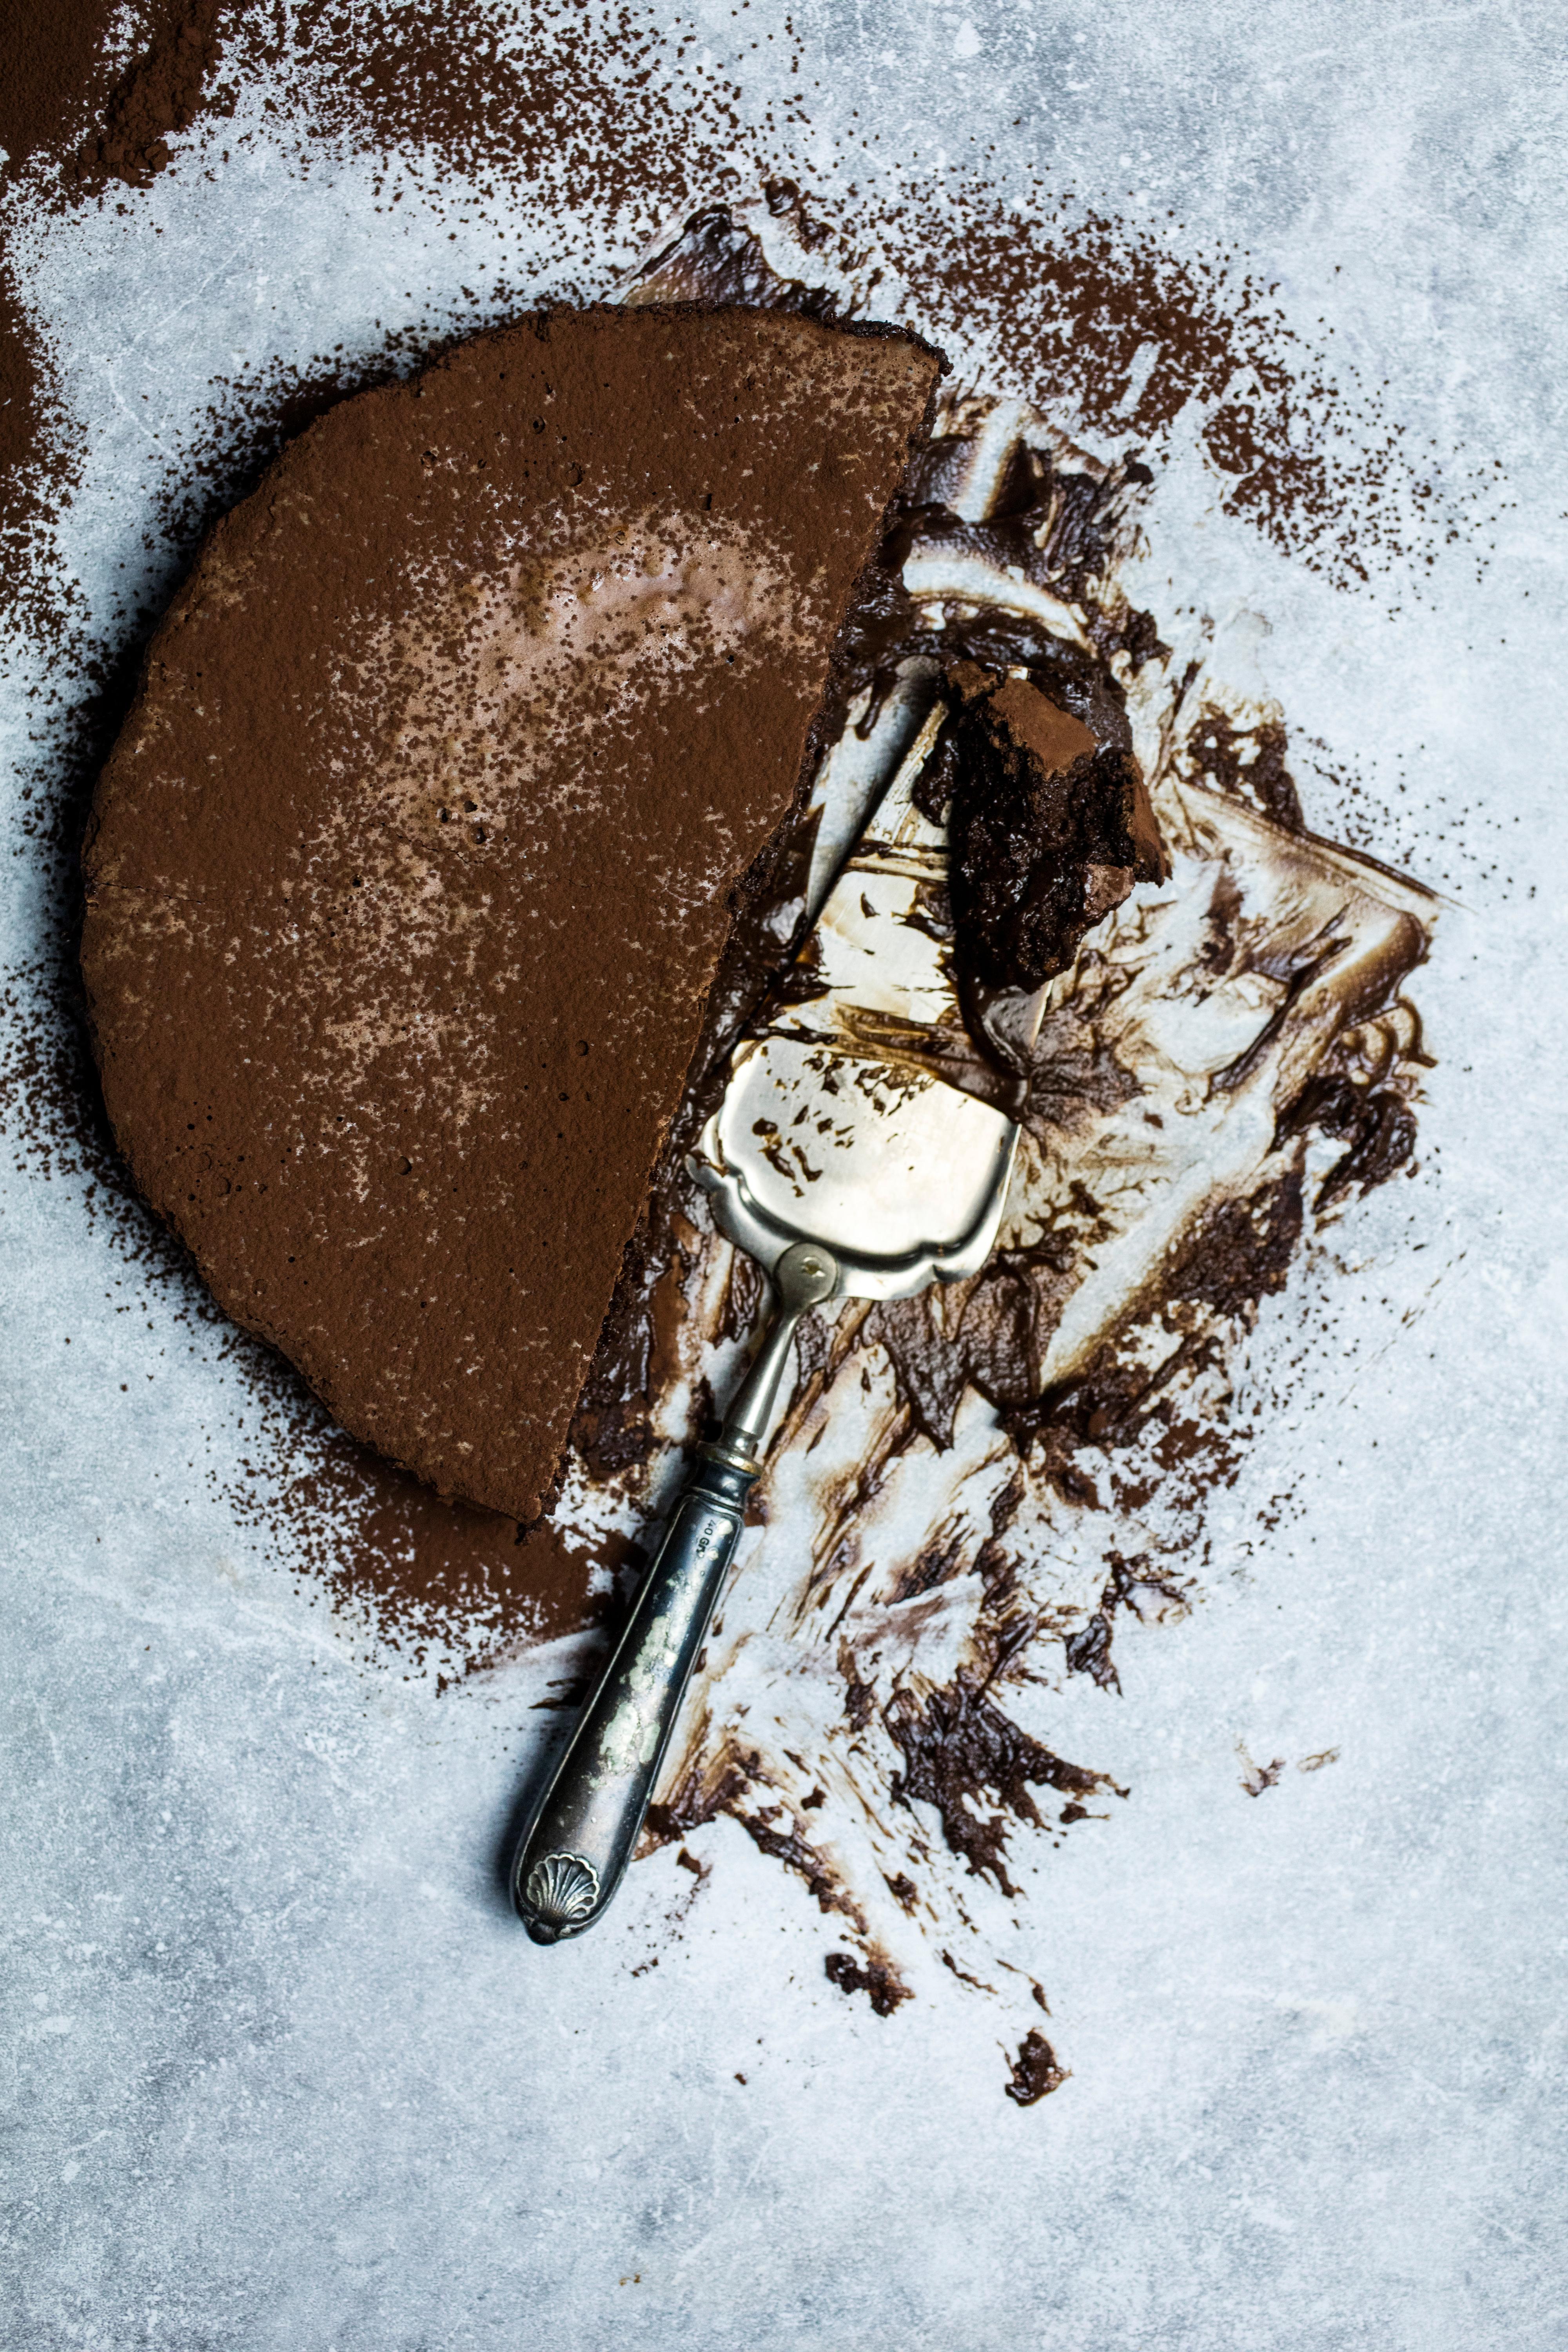 Vend kaken over på et fat og dryss over kakao eller melis.